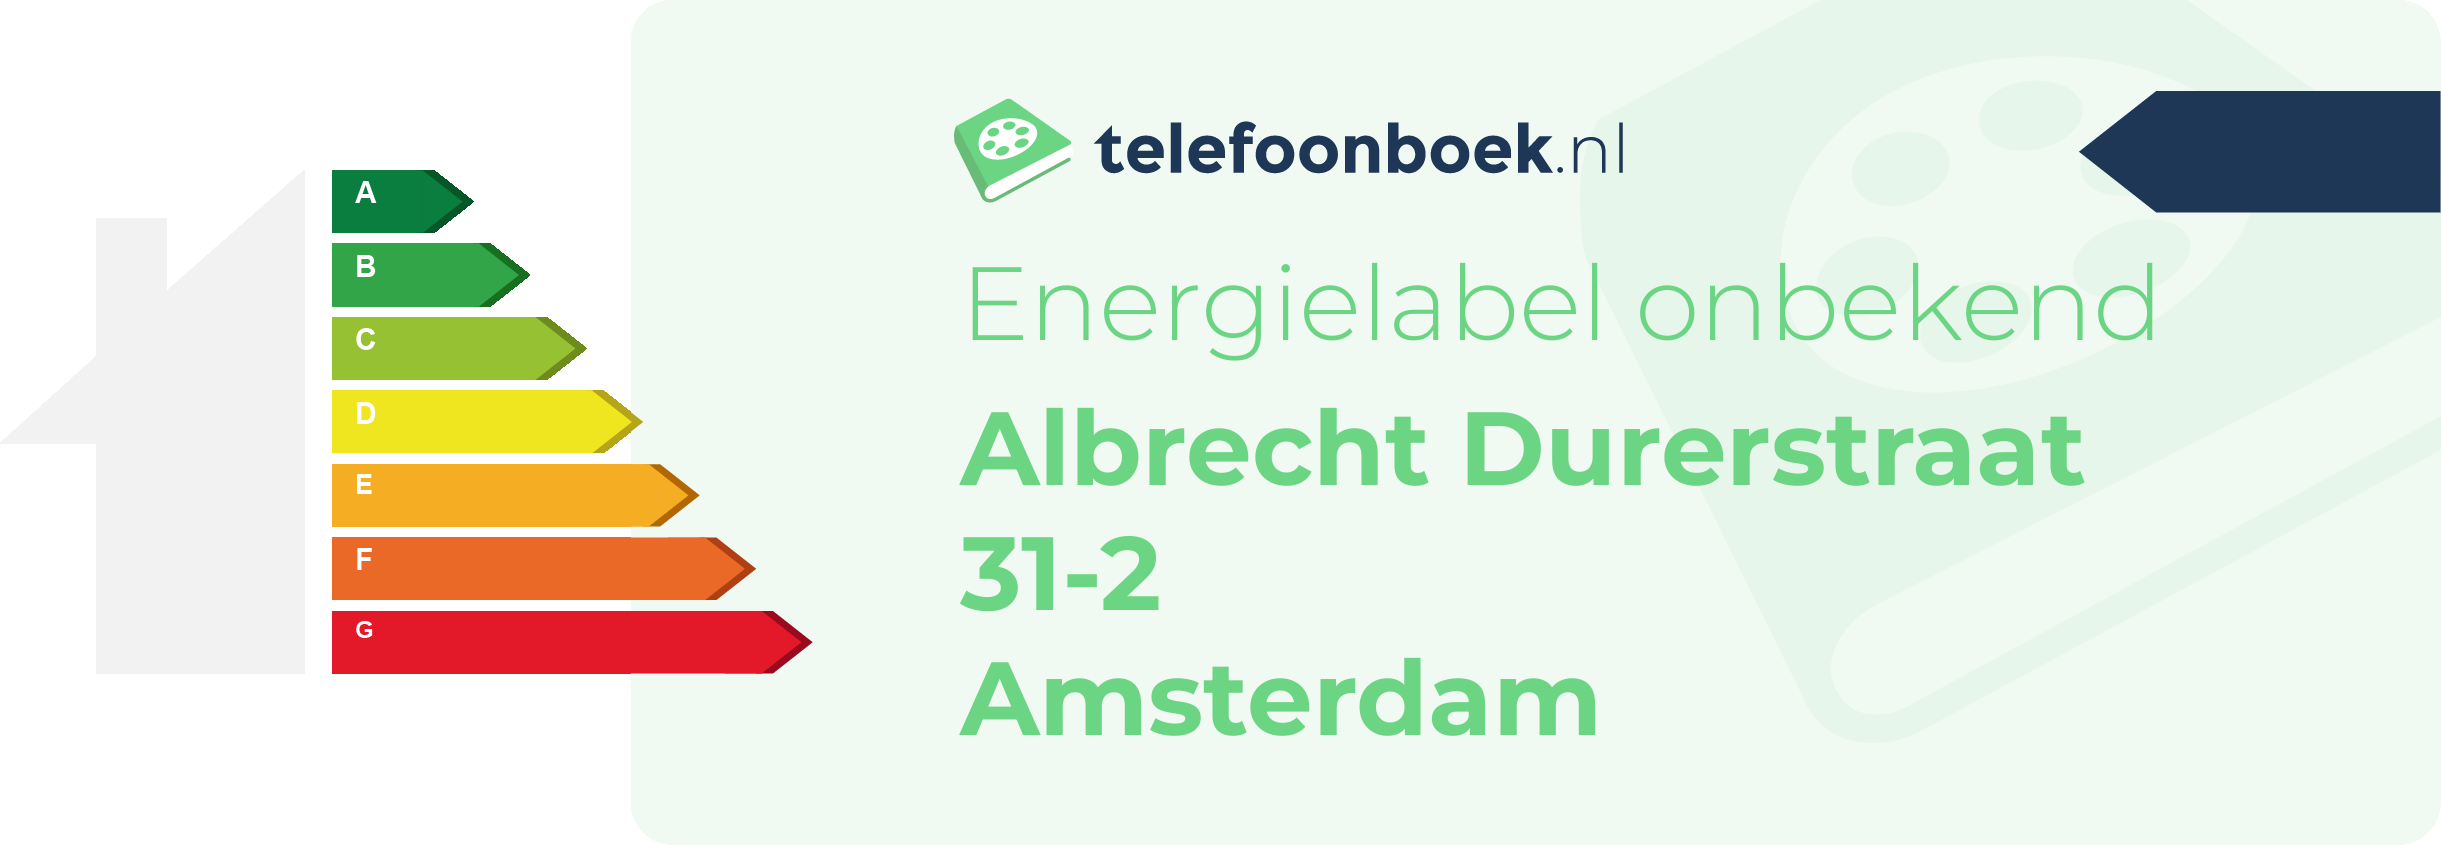 Energielabel Albrecht Durerstraat 31-2 Amsterdam